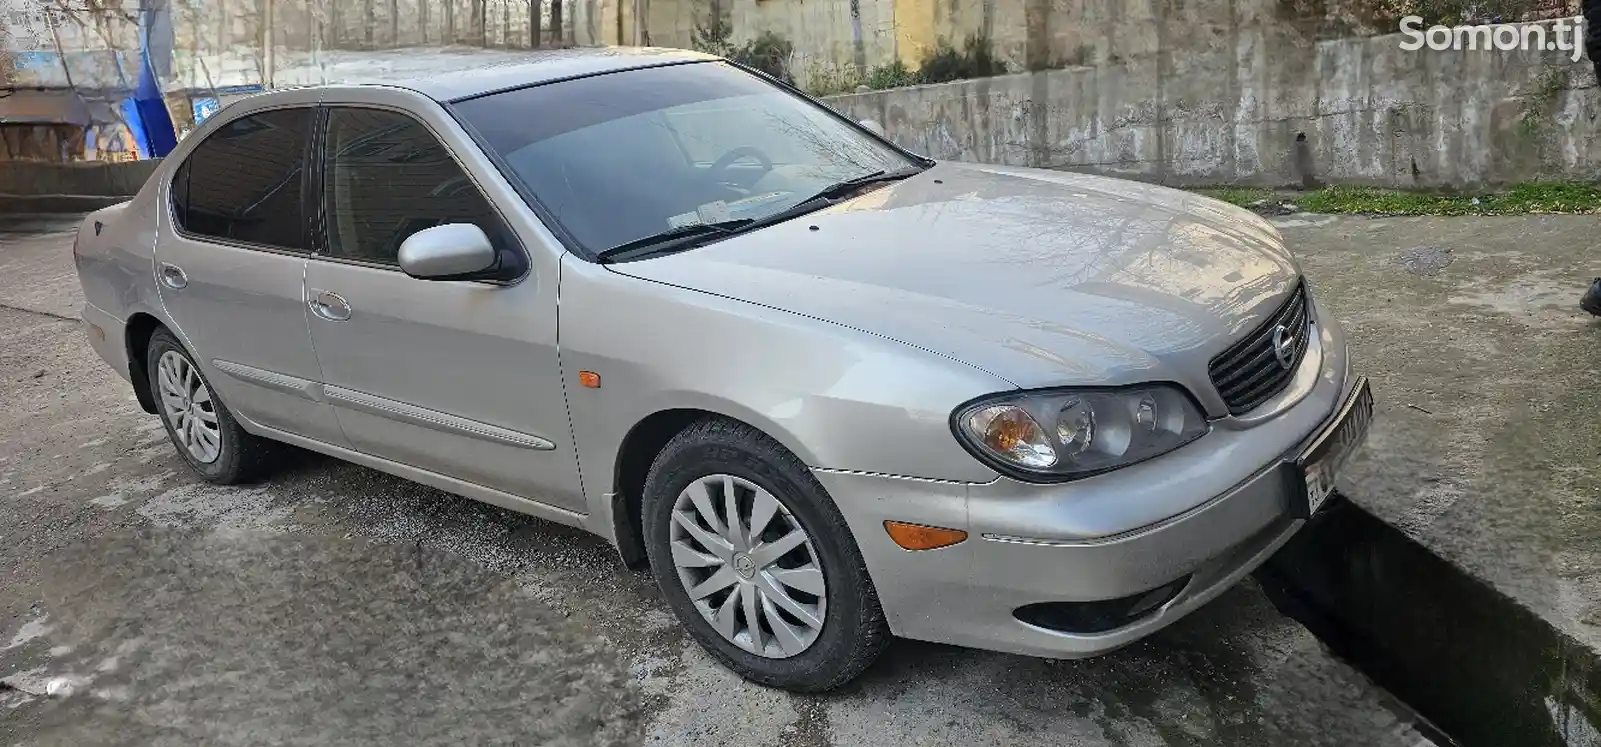 Nissan Maxima, 2007-2